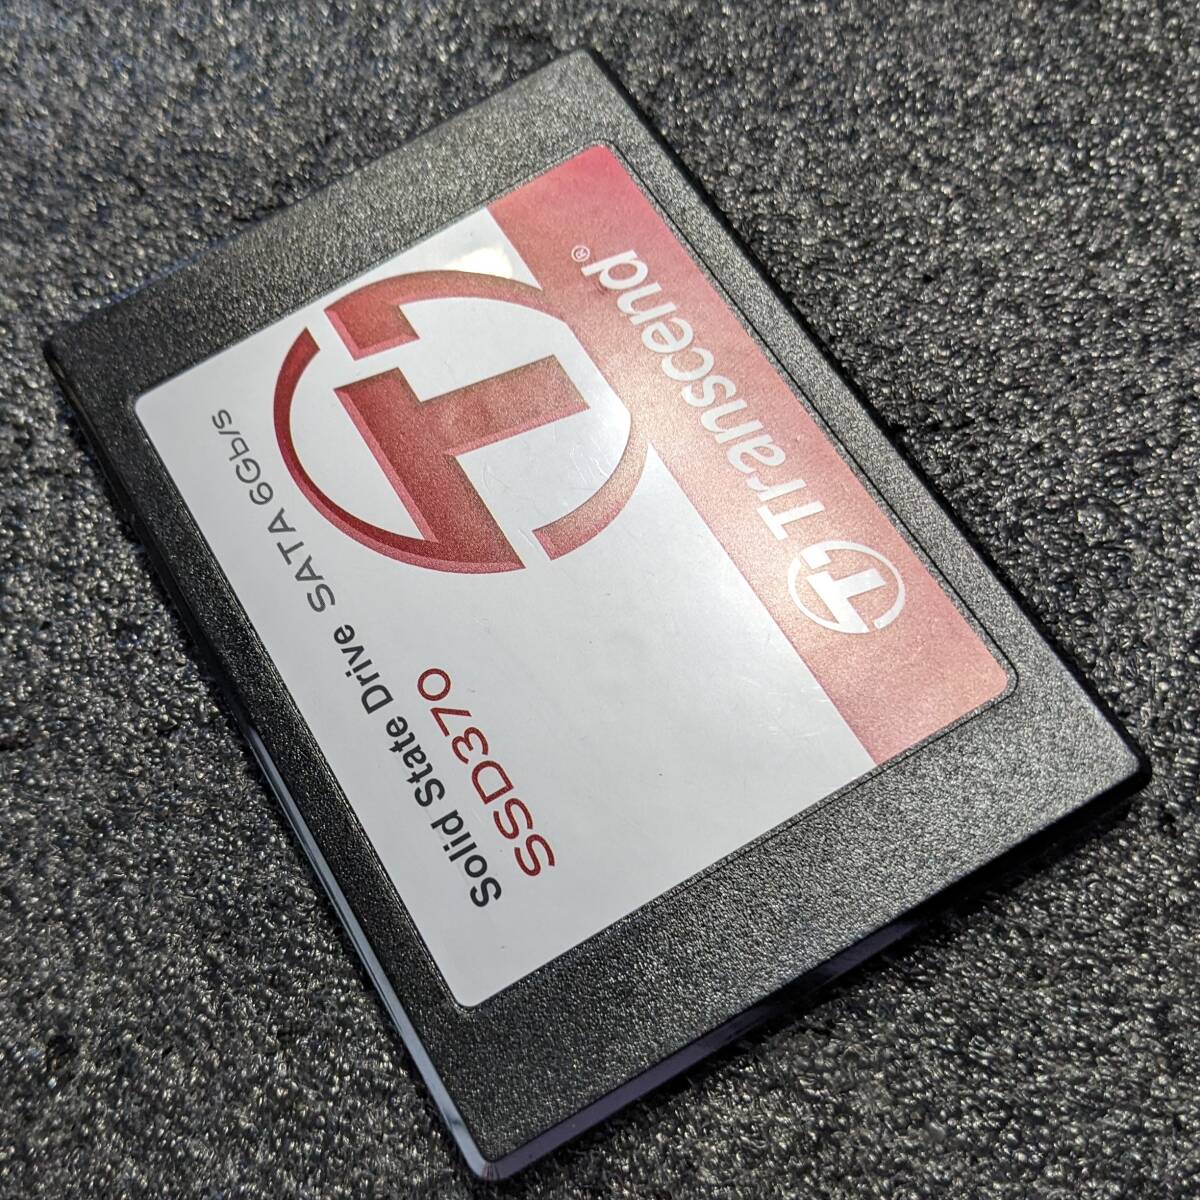 [ б/у ]Ttranscend SSD370 64GB TS64GSSD370 [2.5 дюймовый SATA3 7mm толщина MLC здоровье состояние 99%]